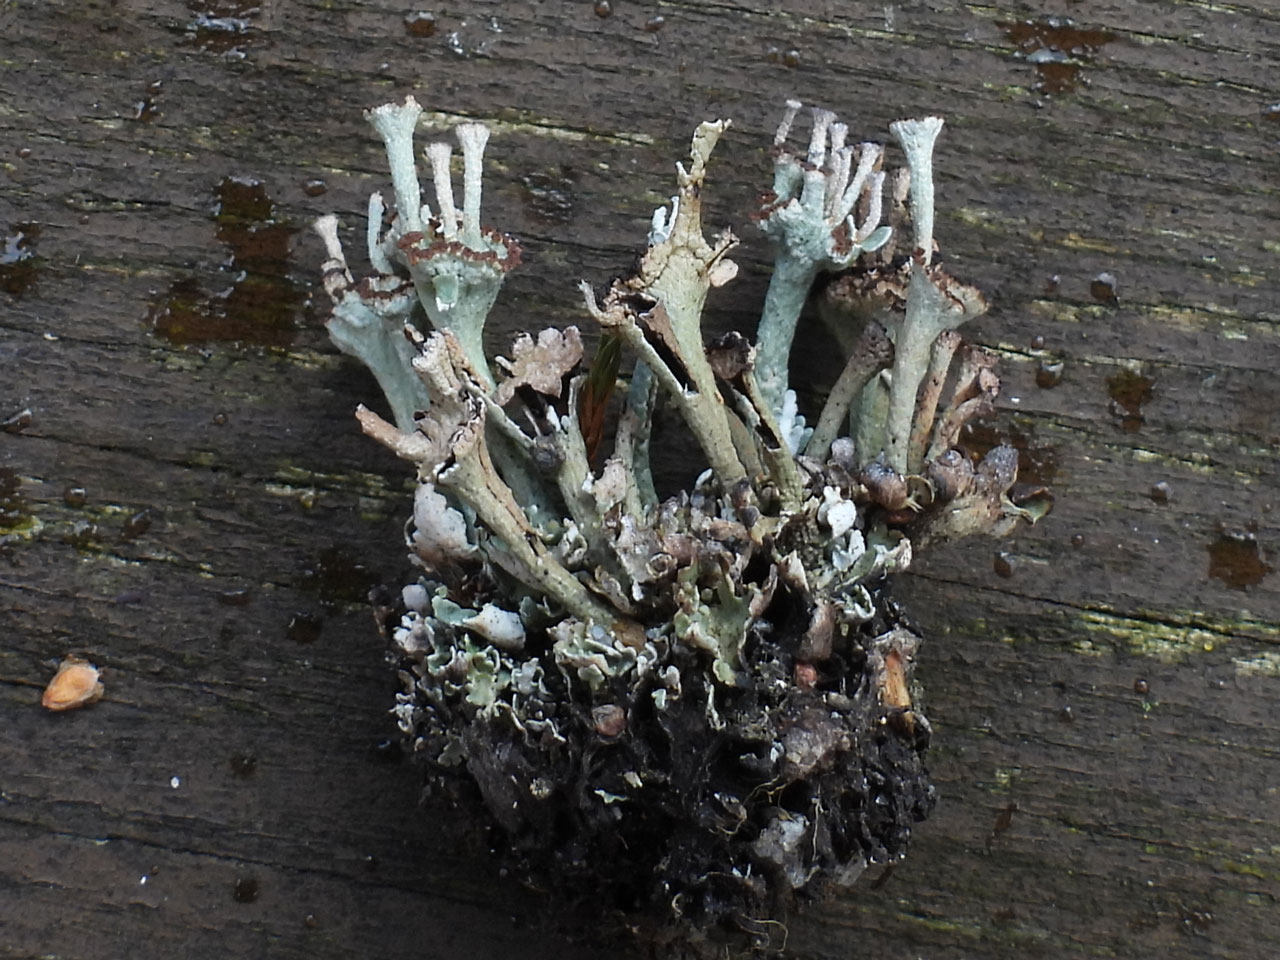 Cladonia pulvinata, mine waste, Nant-y-glo, Carmarthenshire